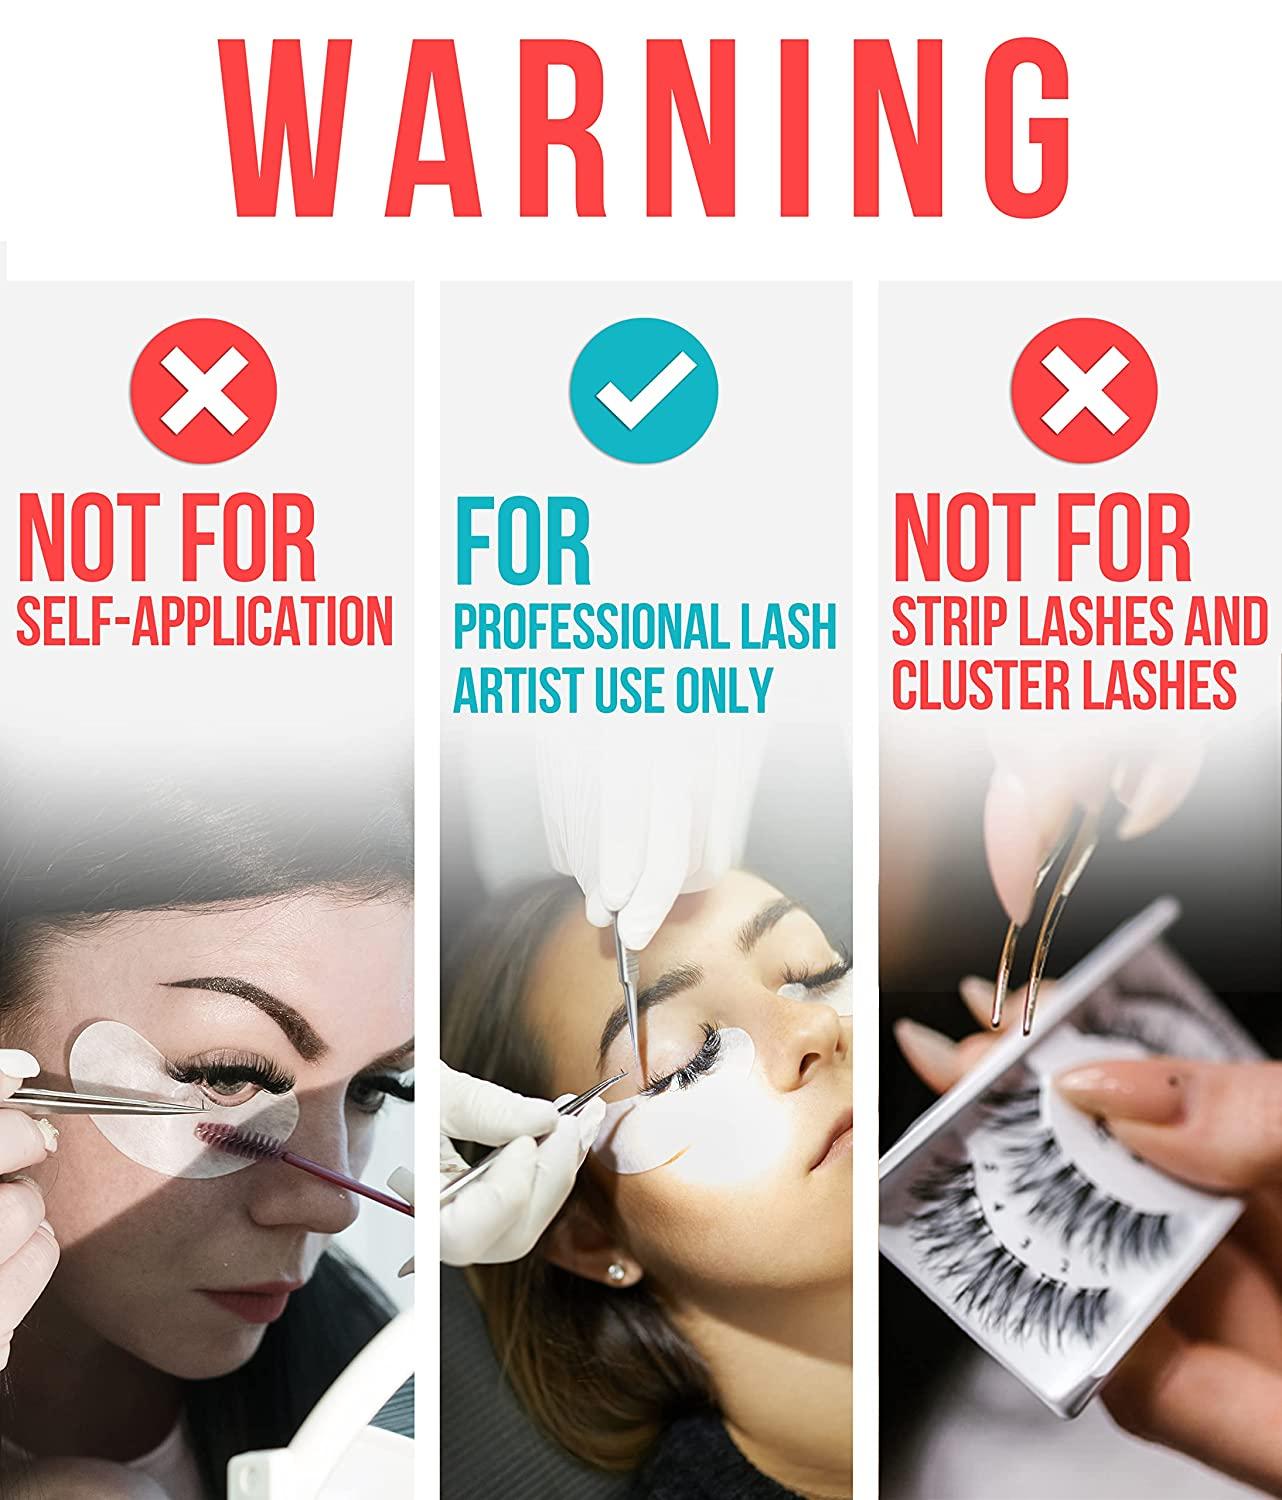 Crystal Bond Clear Eyelash Extension Glue [Clear Lash Glue]